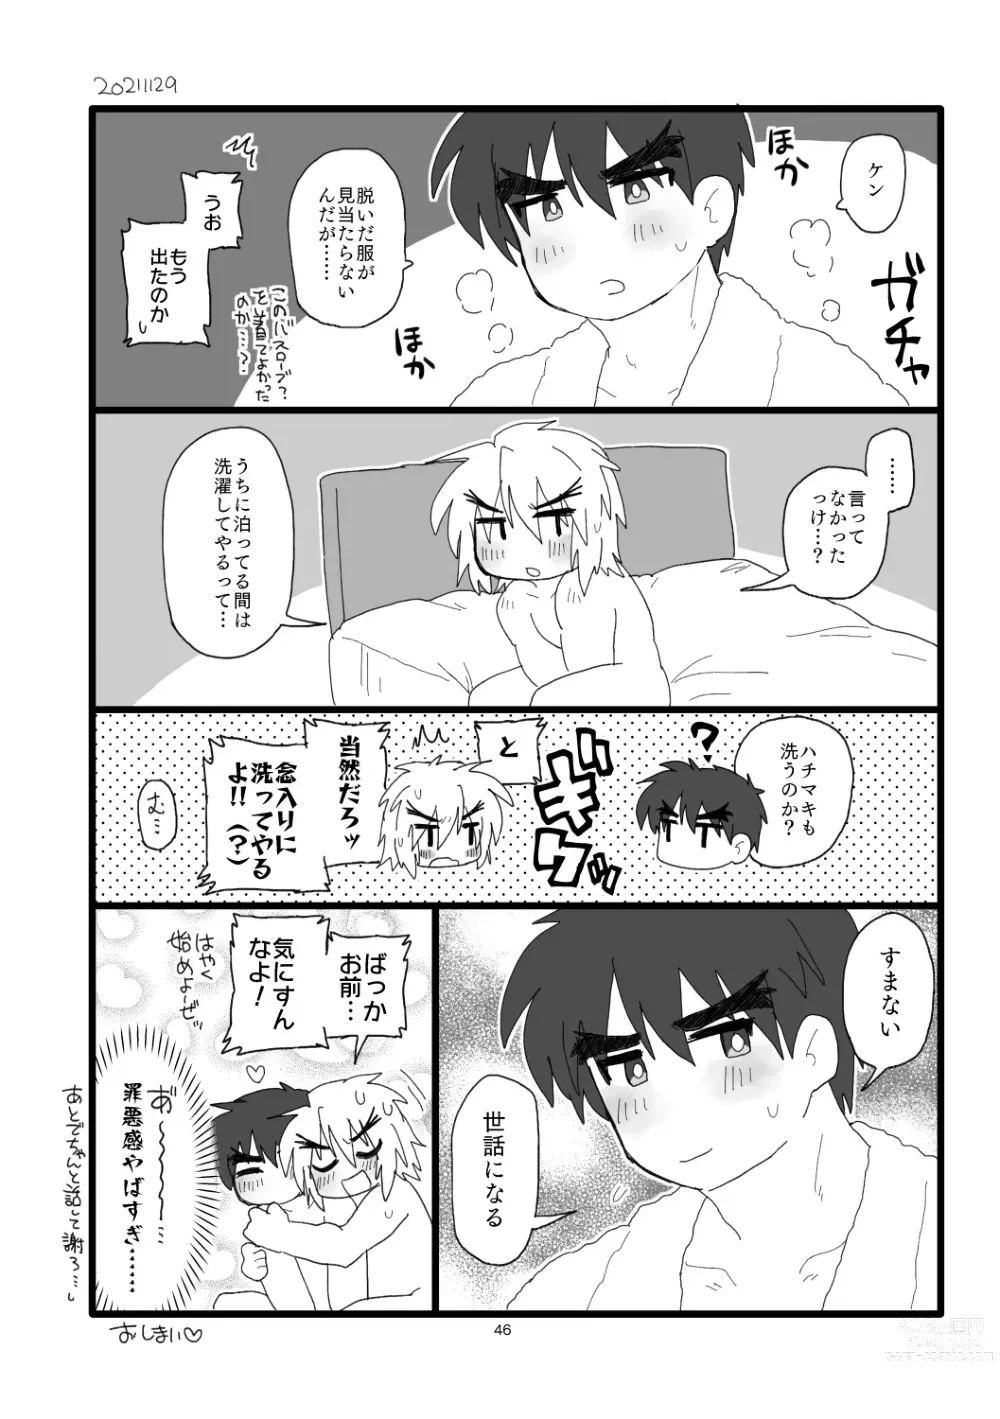 Page 45 of doujinshi Kobushi Kiss